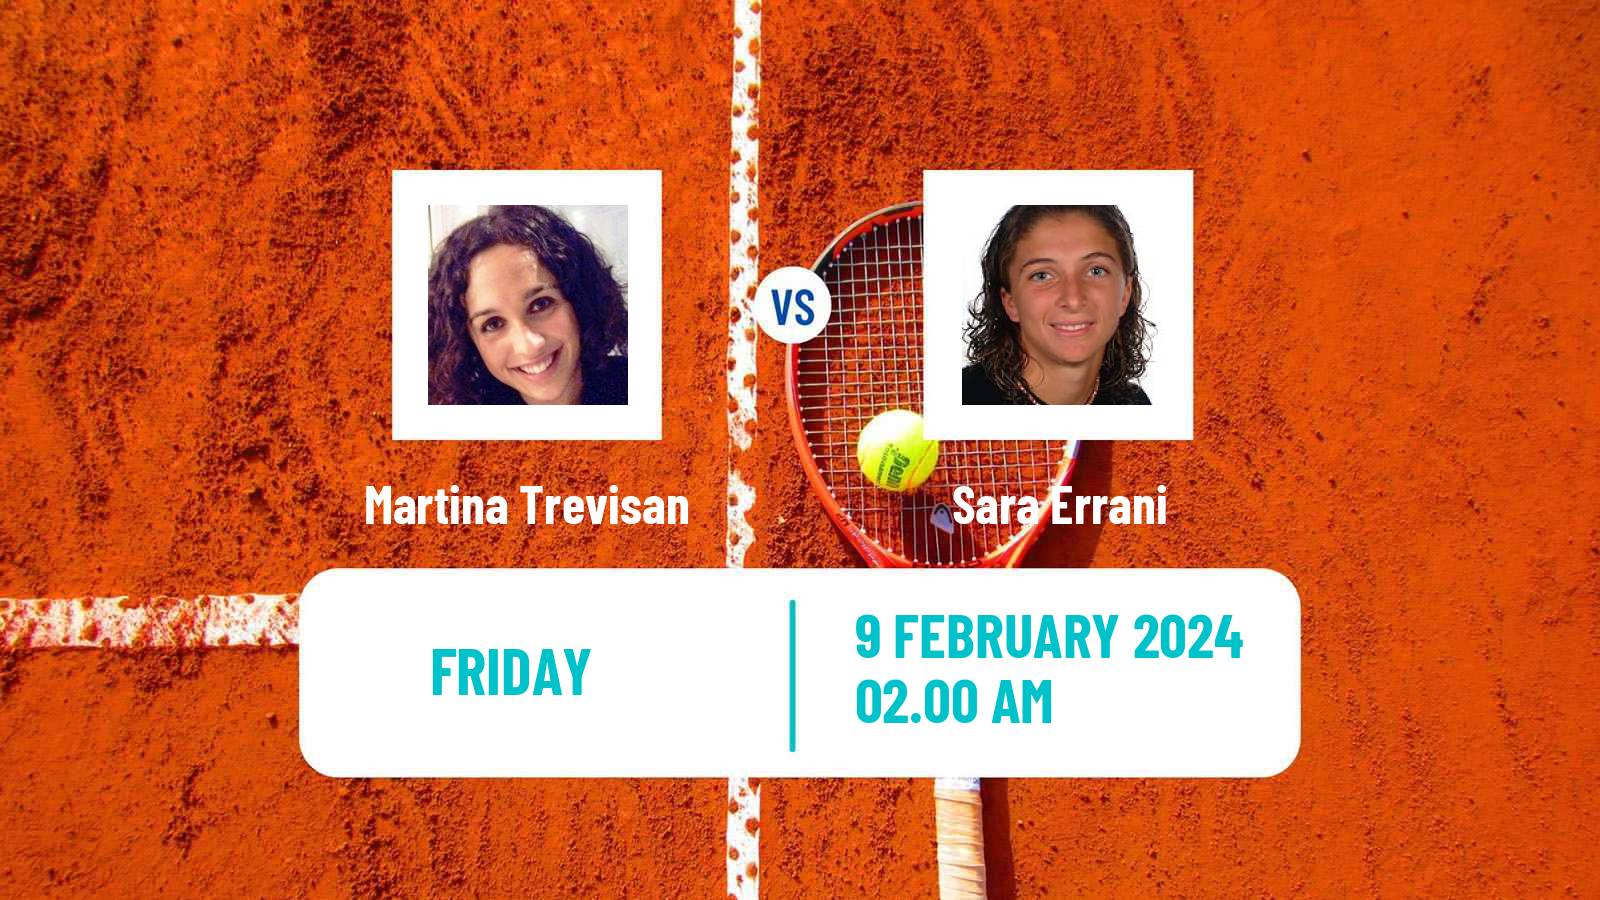 Tennis WTA Doha Martina Trevisan - Sara Errani